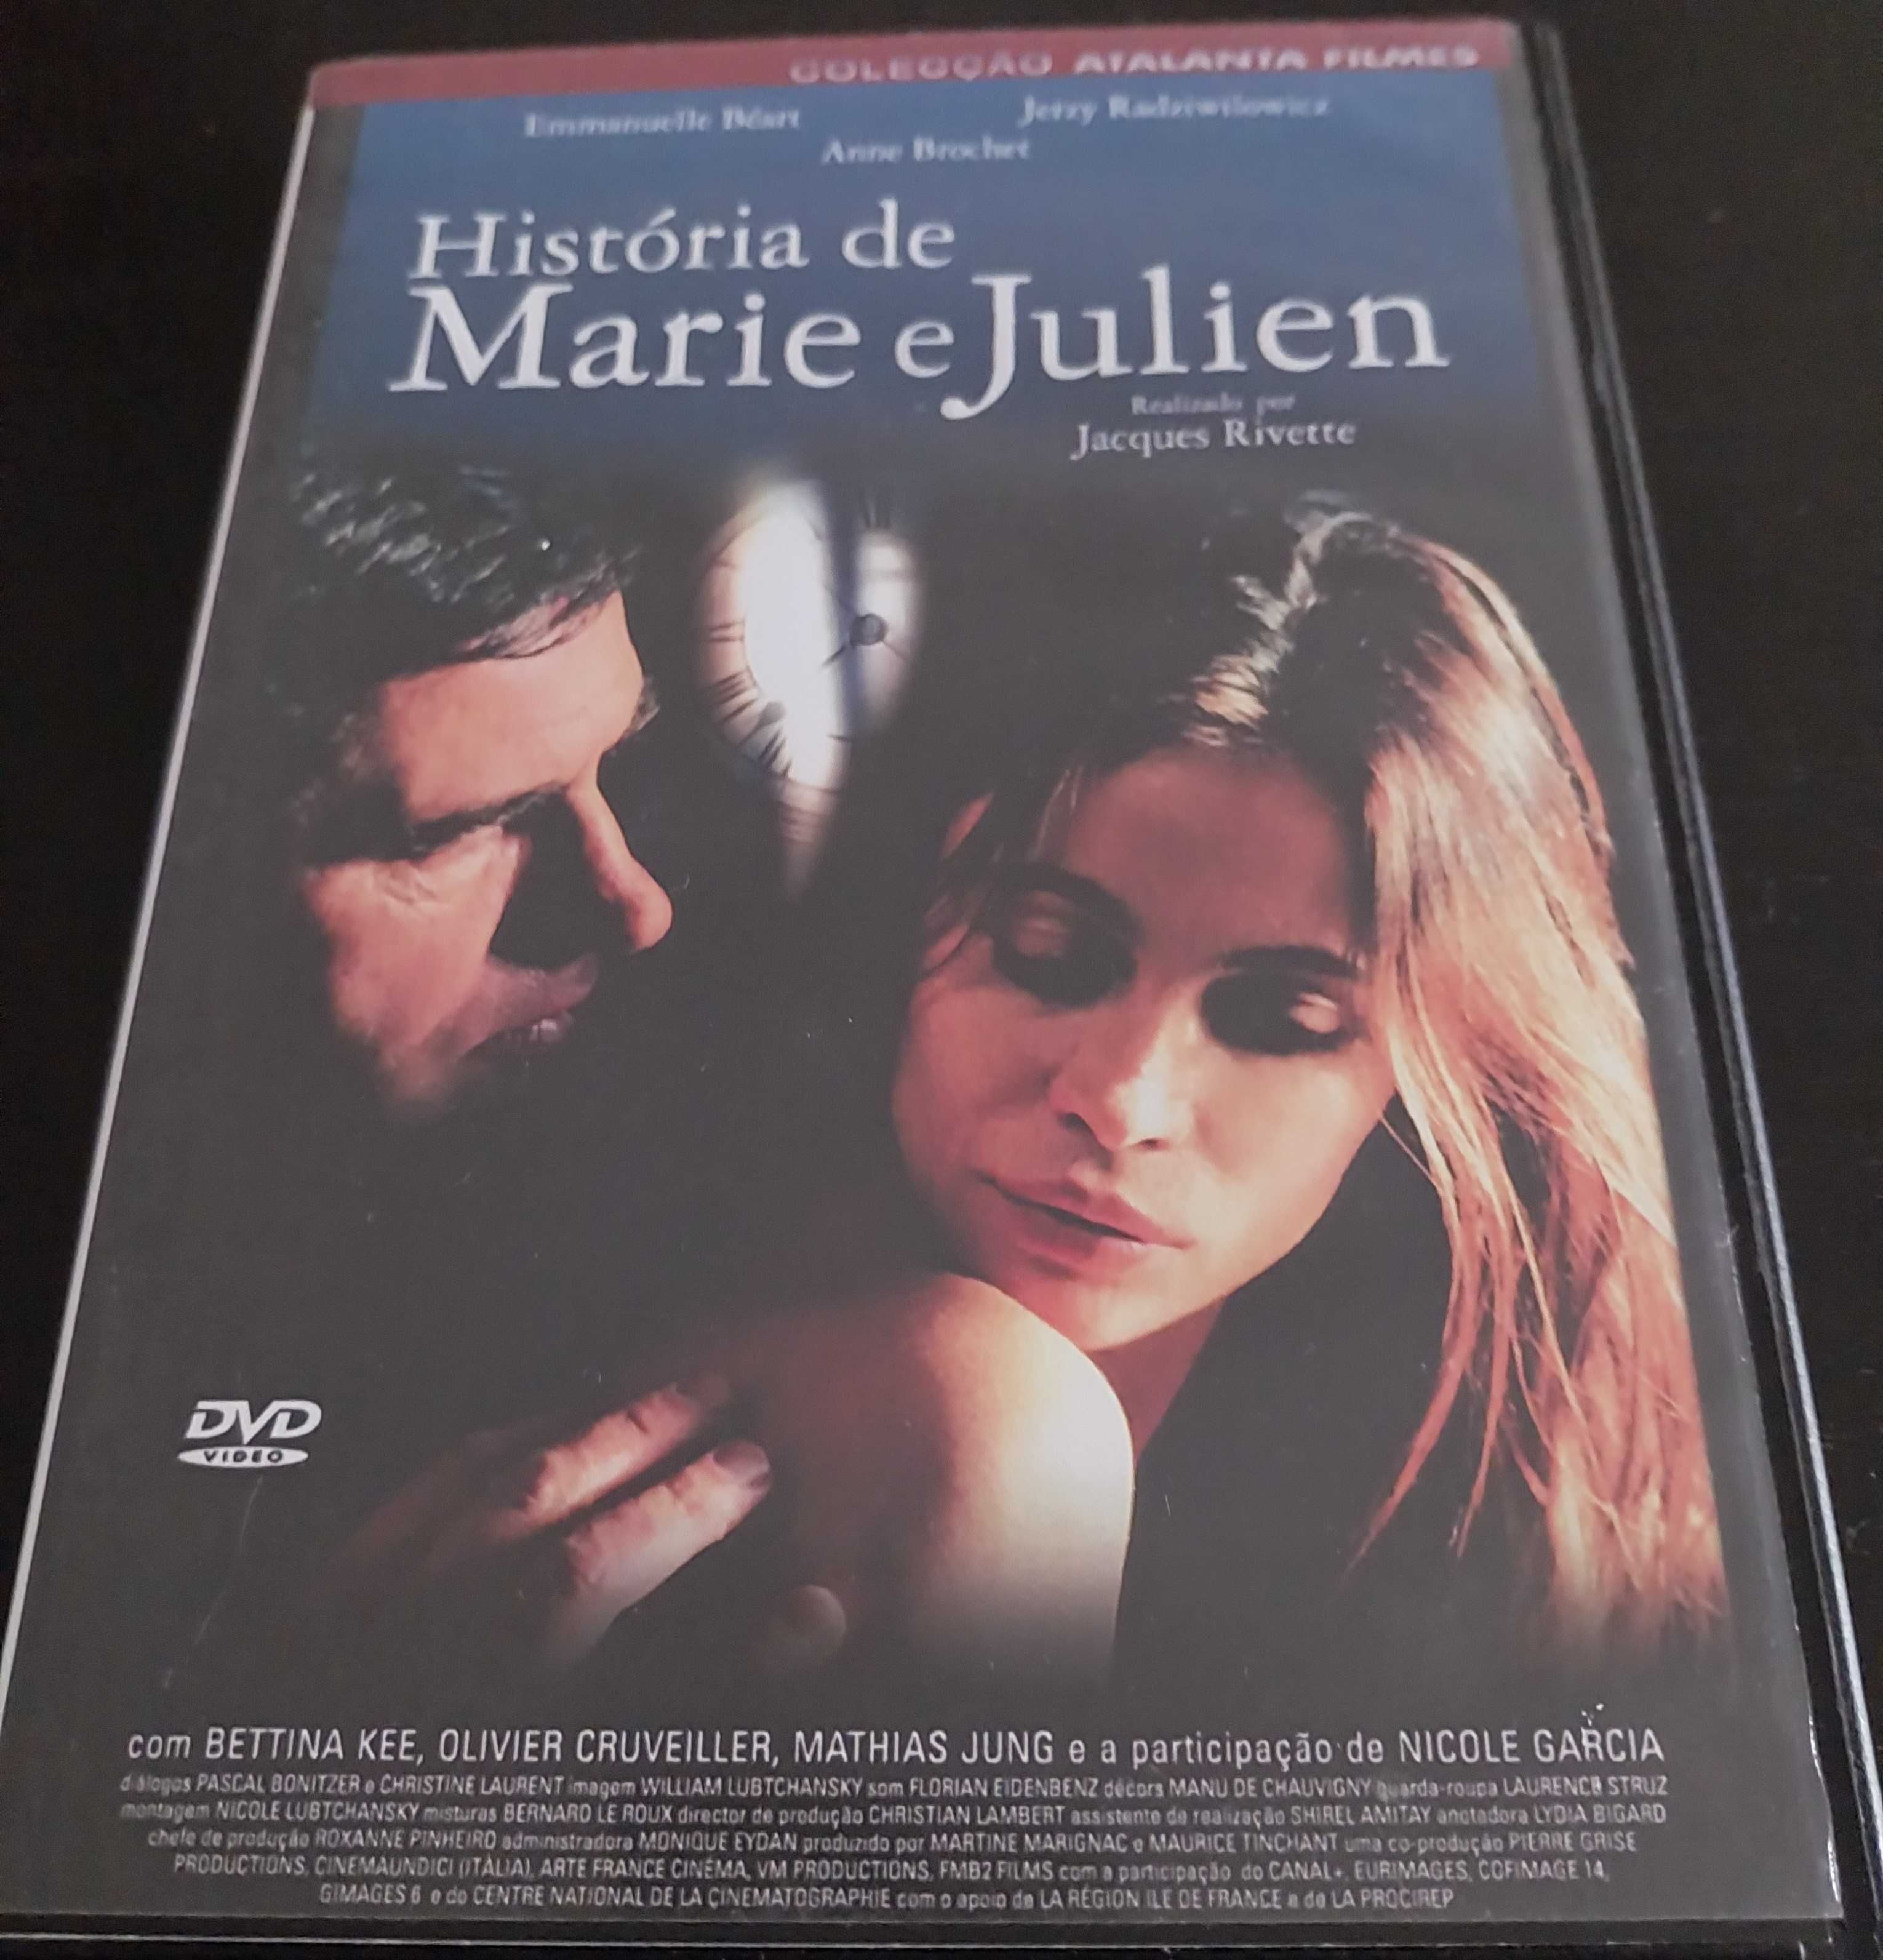 DVD "História de Marie e Julien", de Jacques Rivette